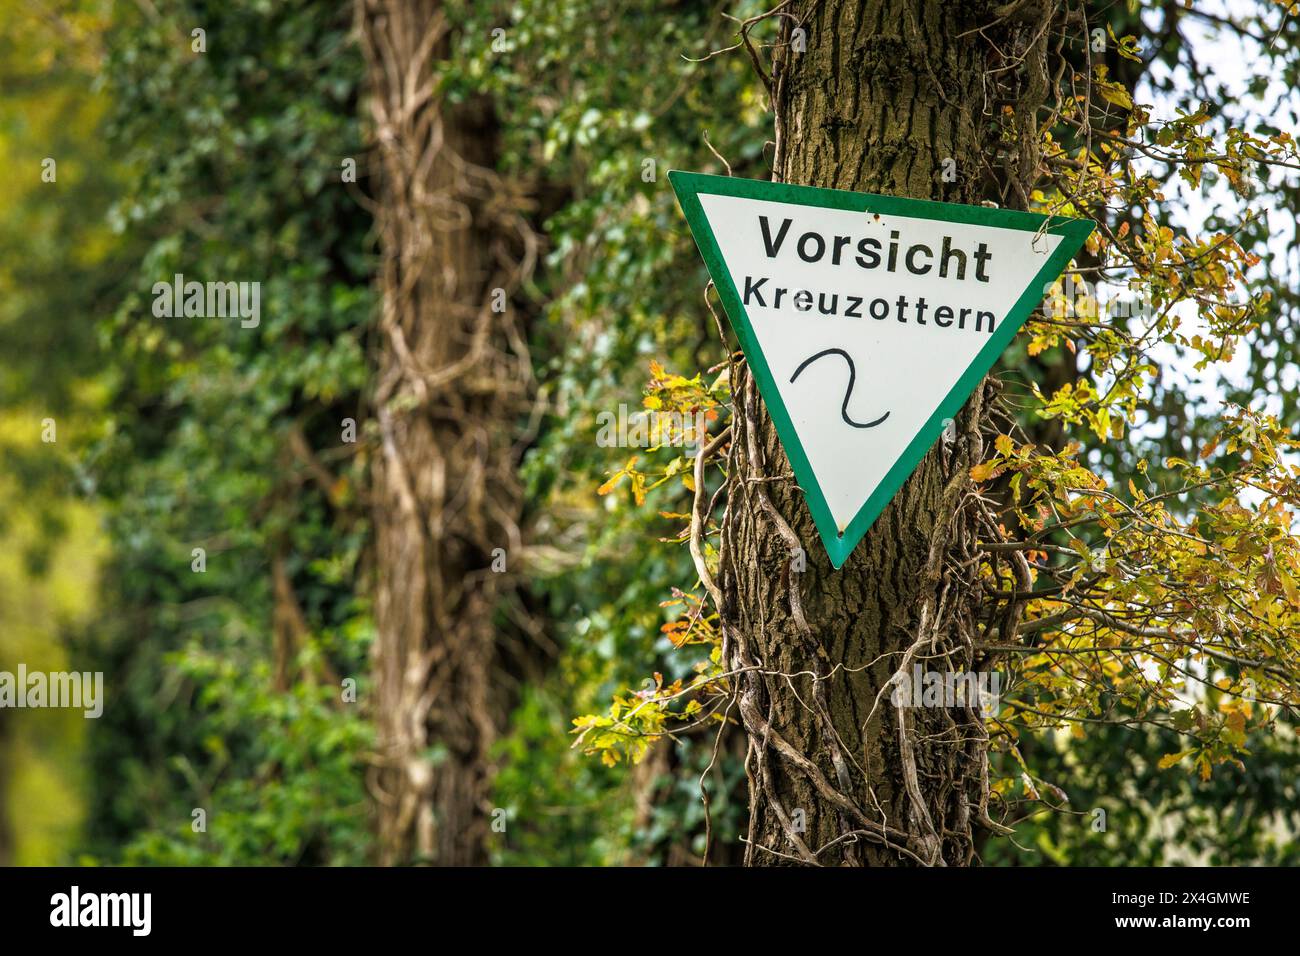 Eine Baumwarnung von Adders, Worpswede, Niedersachsen, Deutschland. Schild an einem Baum warnt vor Kreuzottern, Worpswede, Niedersachsen, Deutschland. Stockfoto